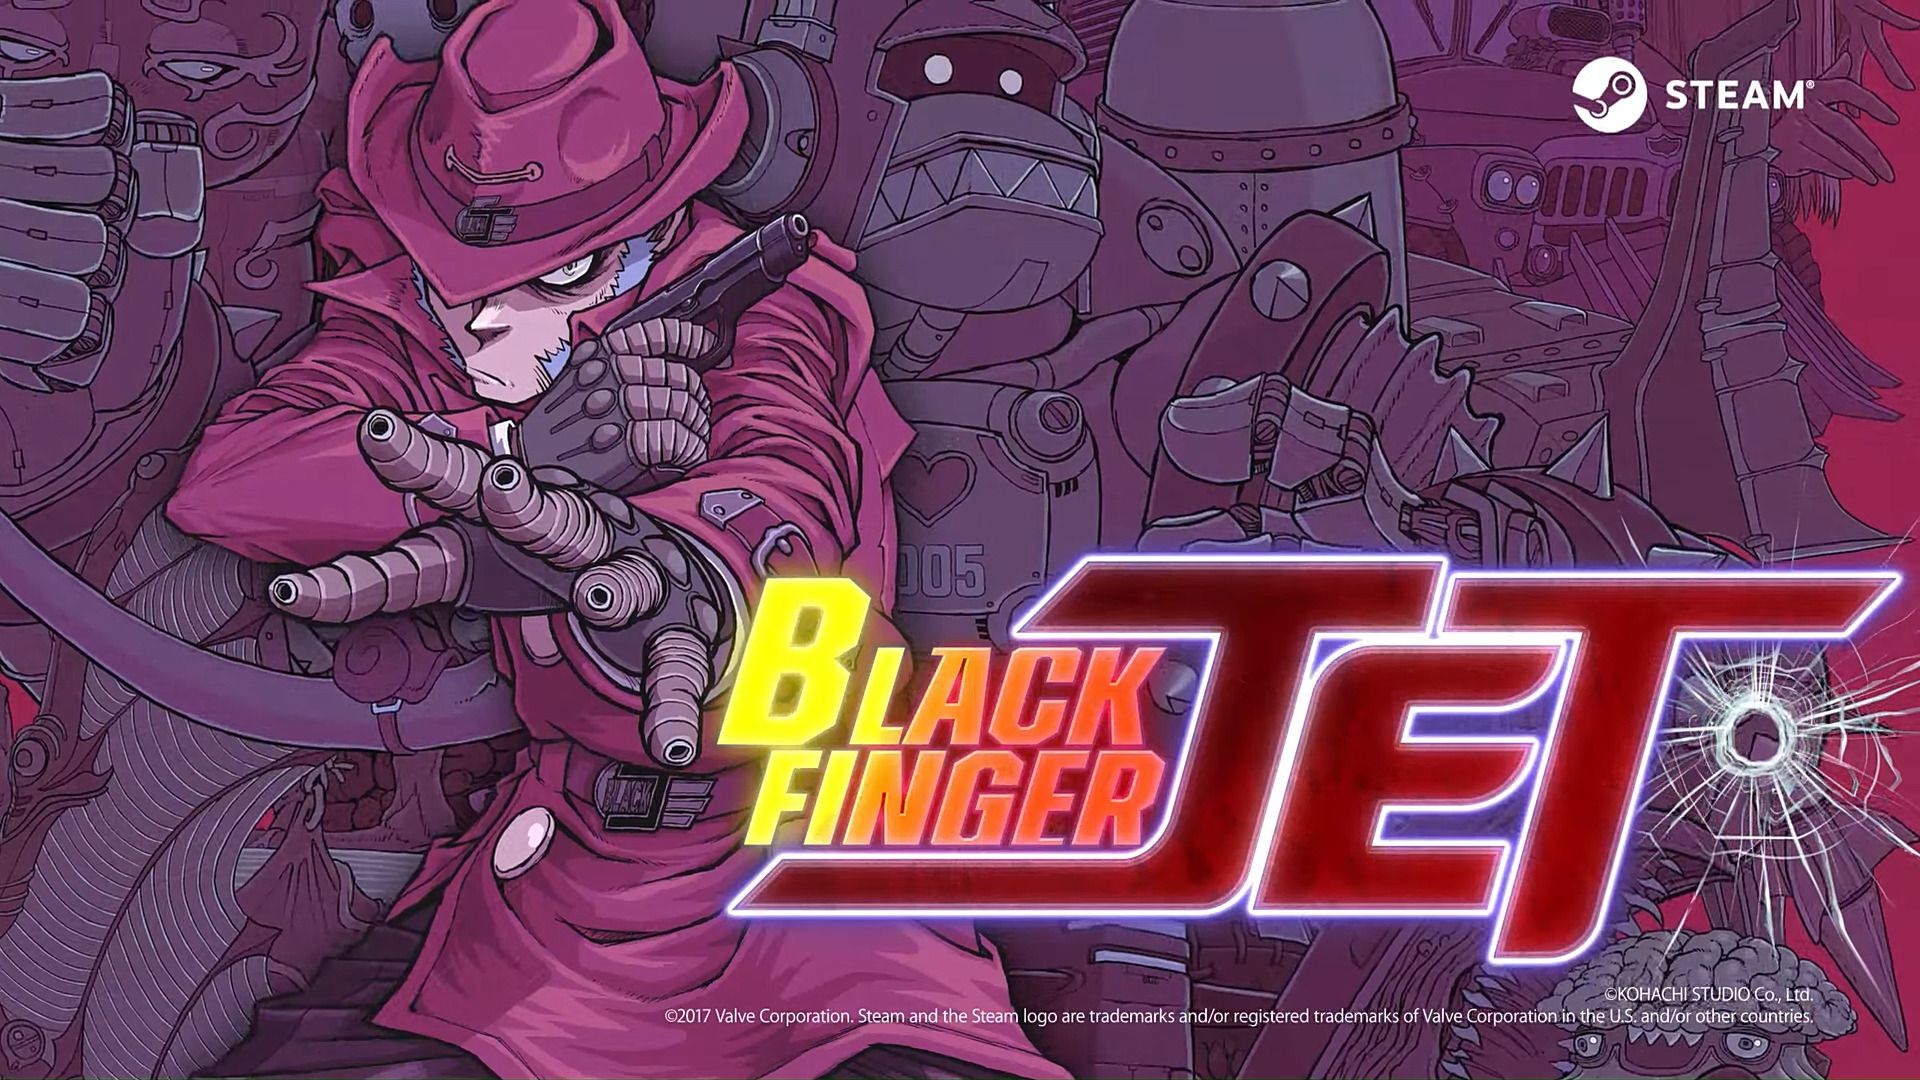 #Black Finger JET: Kohachi Studio zeigt ersten Gameplay-Trailer zum Run-and-Gun-Game